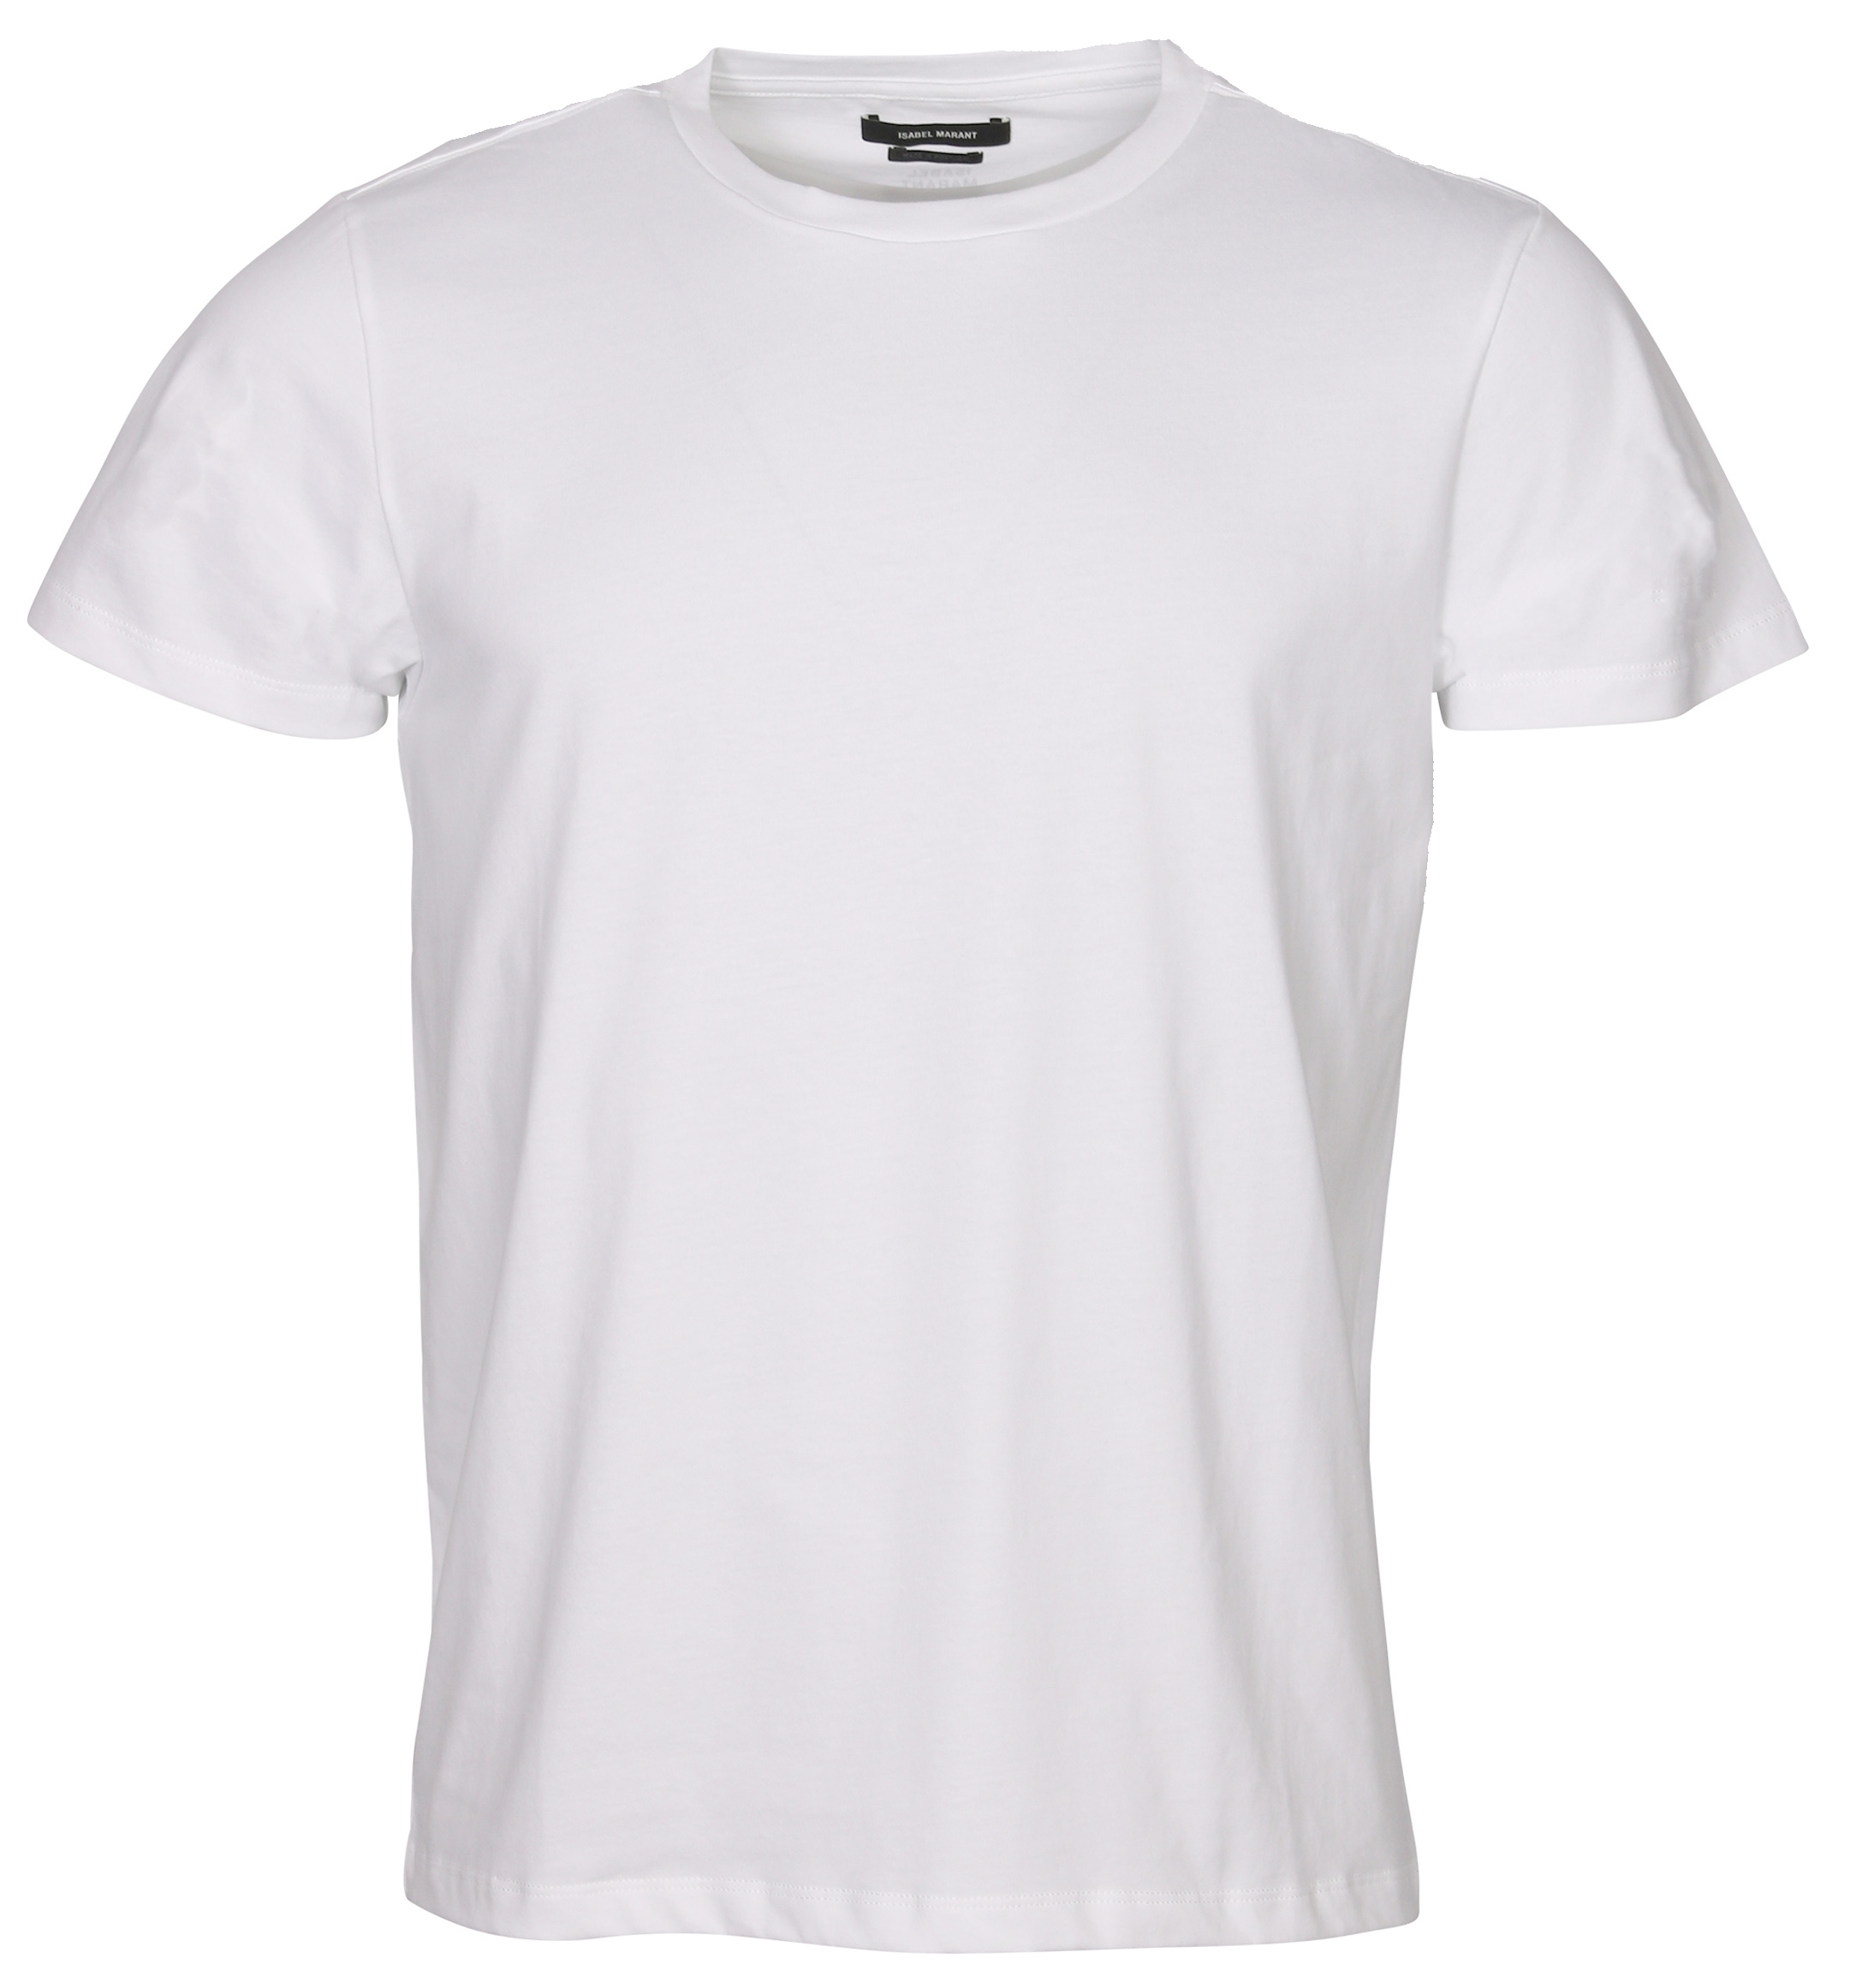 Isabel Marant T-Shirt Annax White